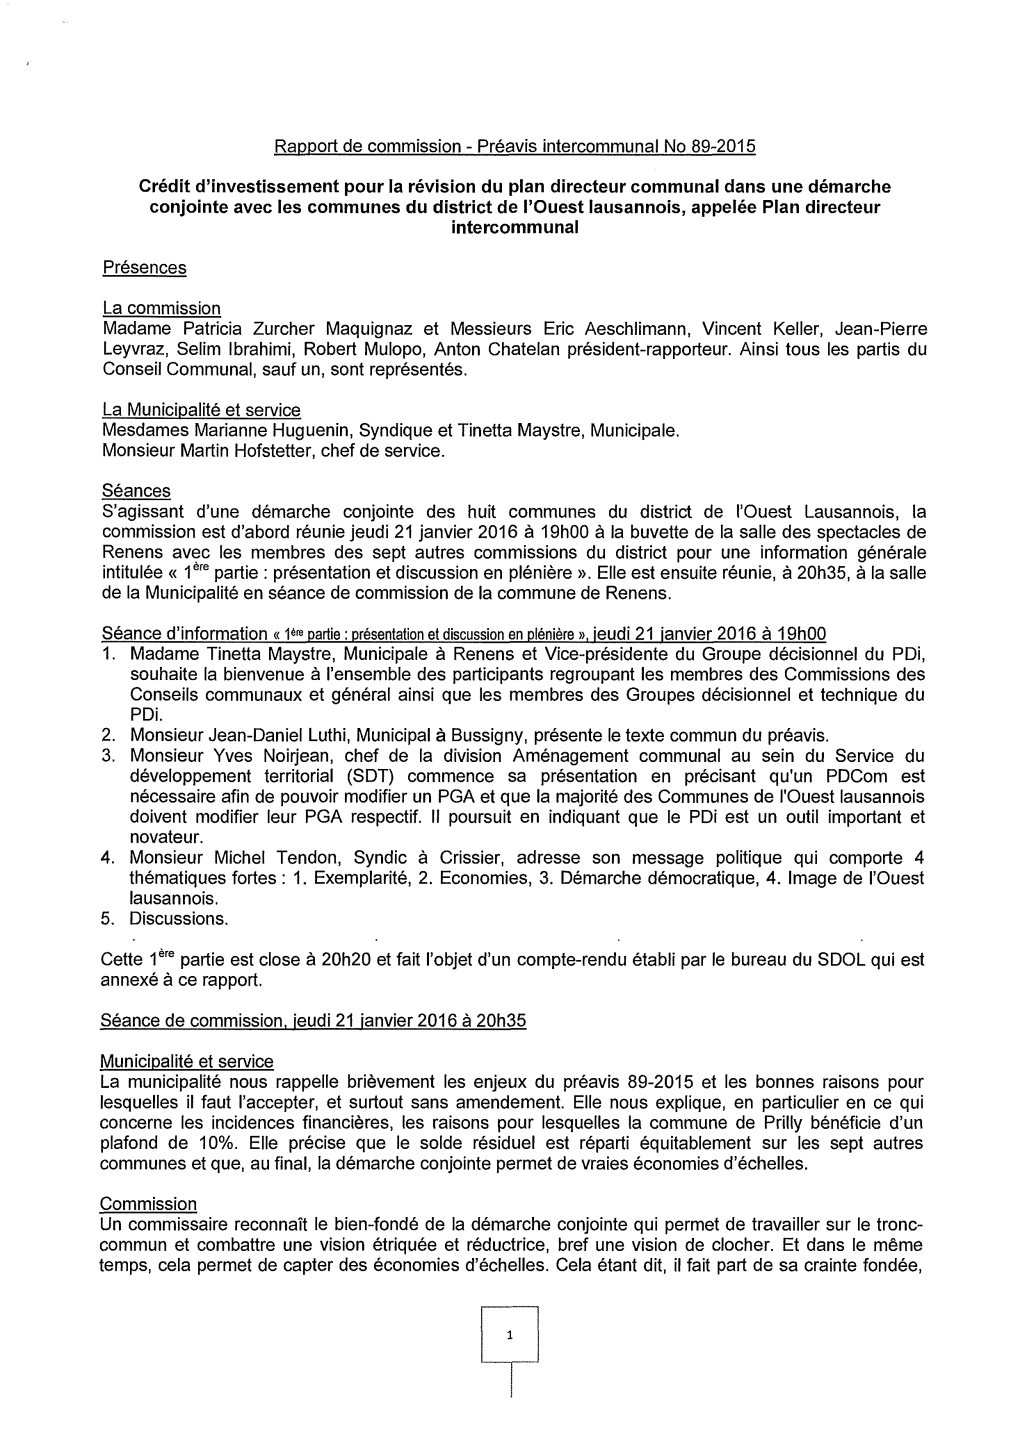 Rapport De Commission - Préavis Intercommunal No 89-2015